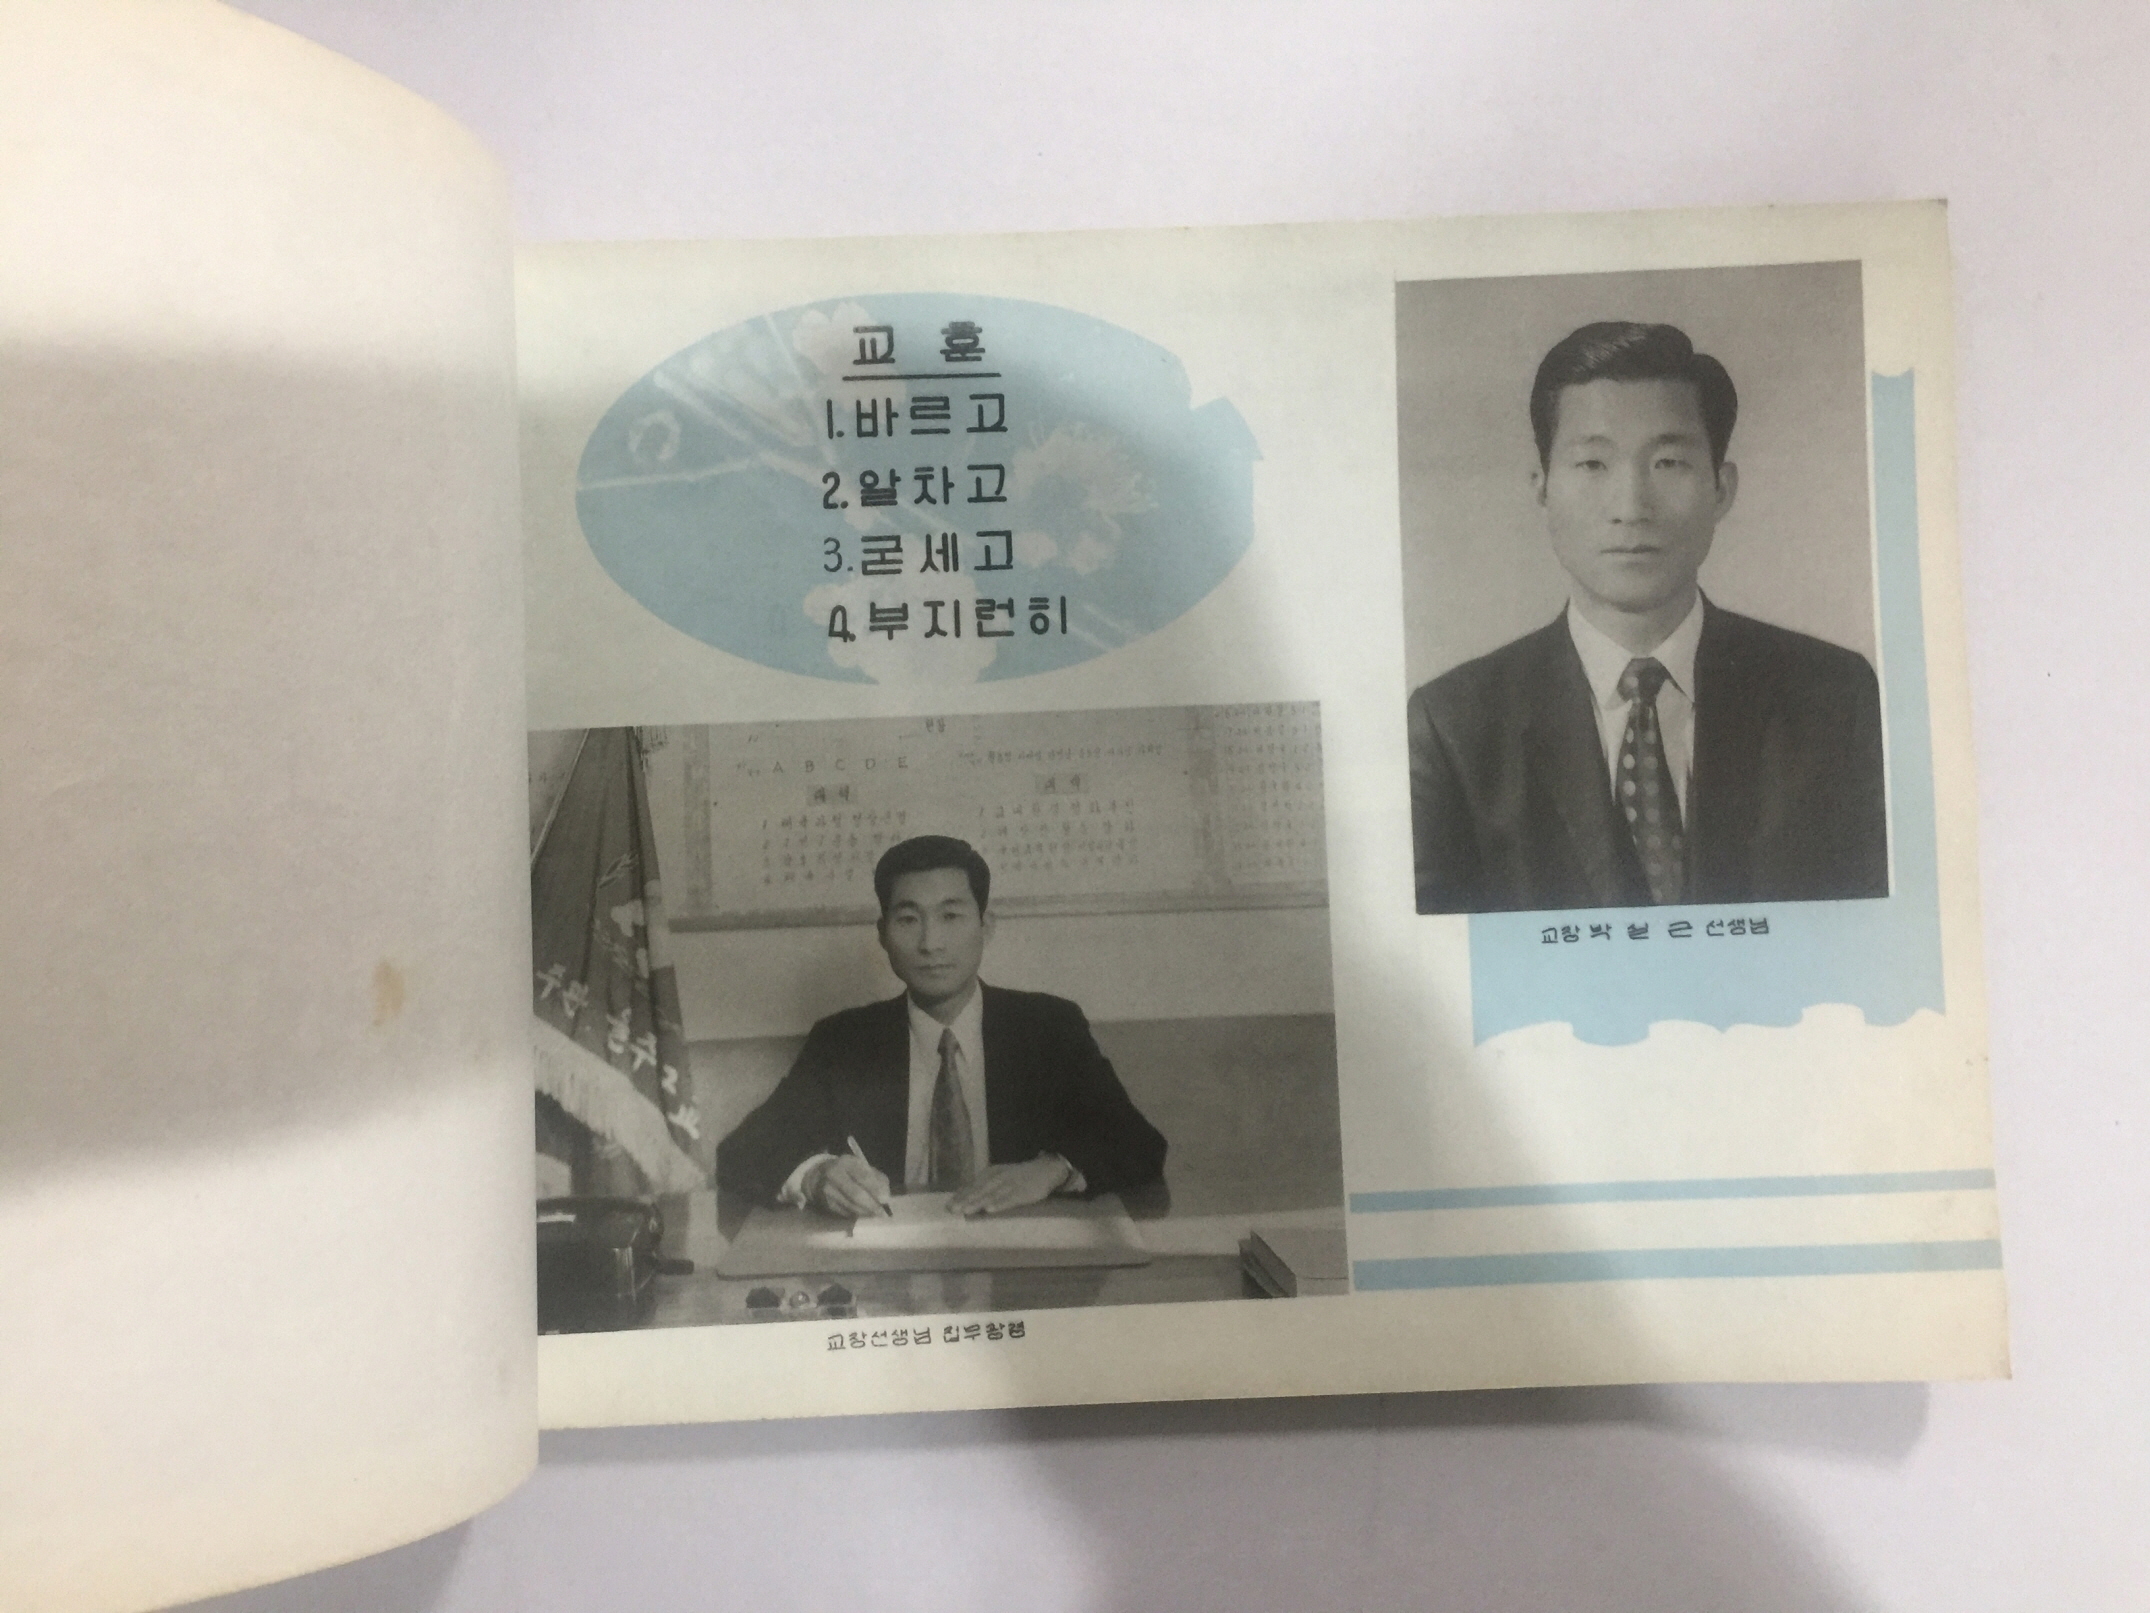 졸업앨범 울주군 춘도국민학교 제22회 (1972년경)